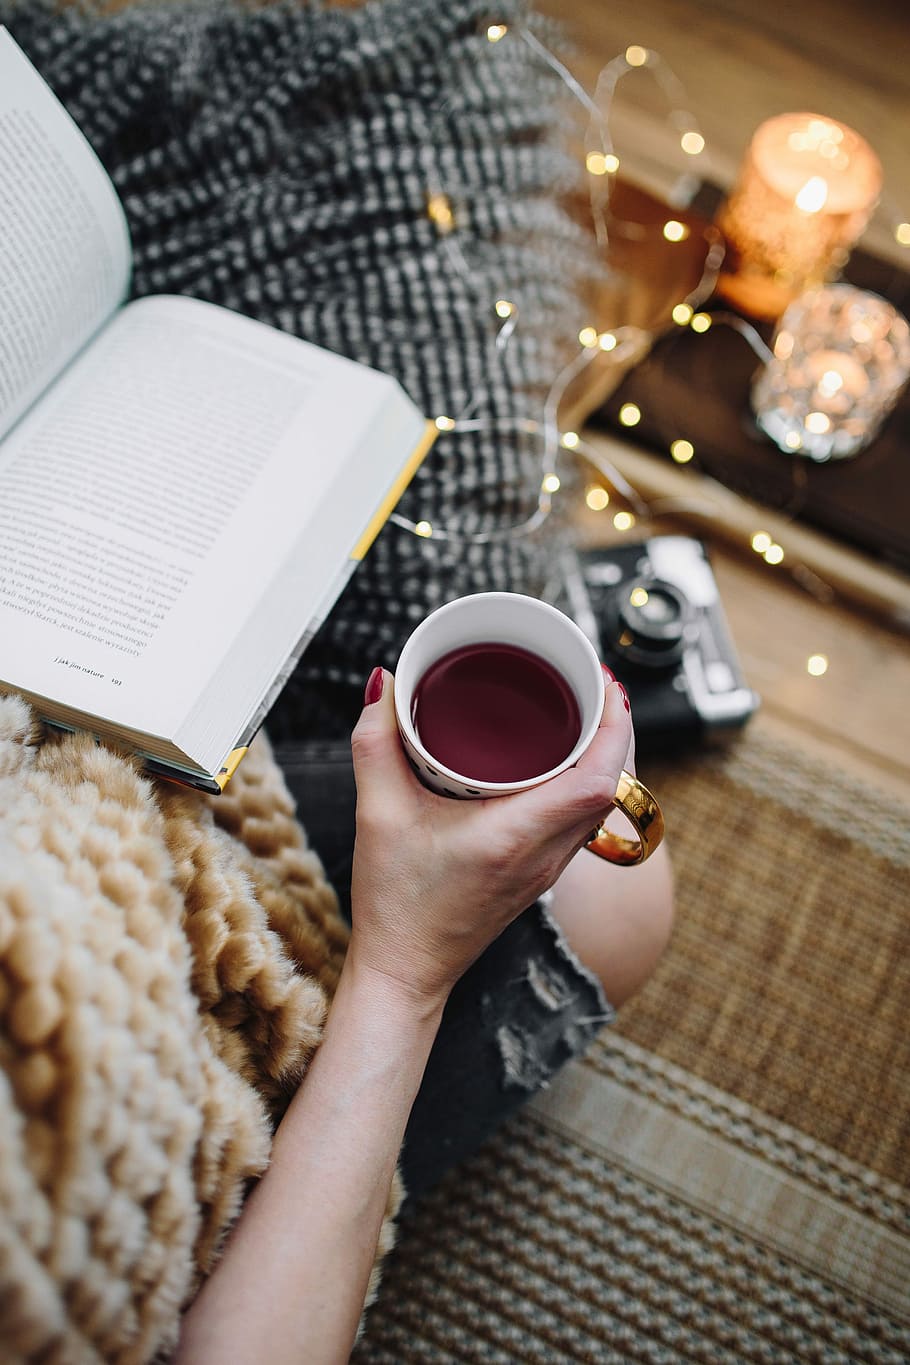 お茶を飲む女性, 本を読む, 女性, 飲む, お茶, 家, 本, 読書, 時間, 枕